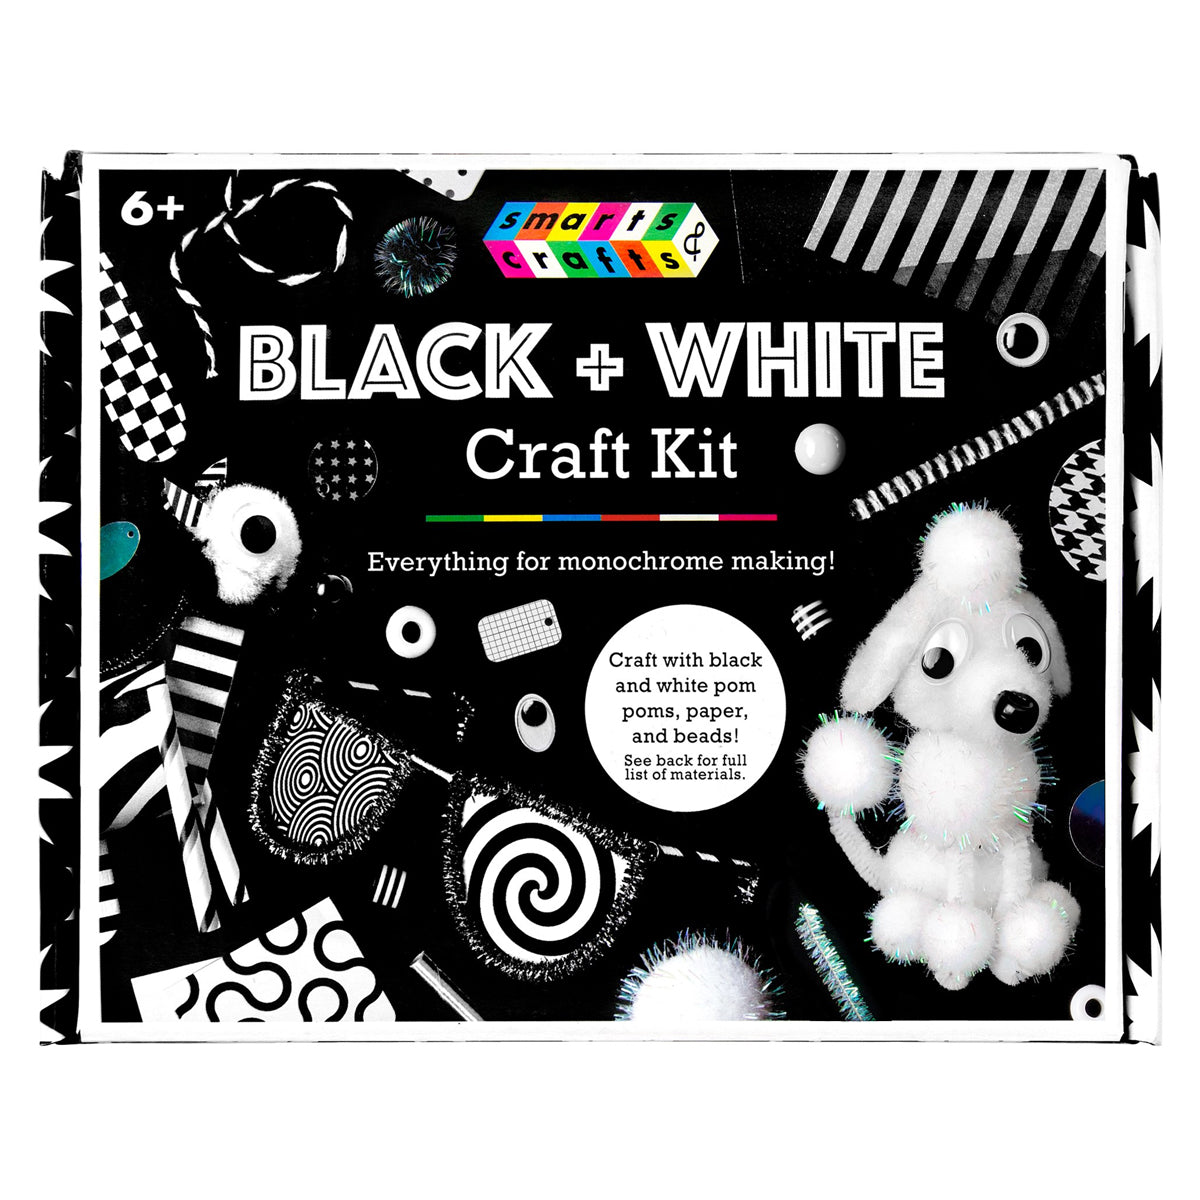 233pc Black + White Craft Kit For Kids – Arts & Crafting Fun!